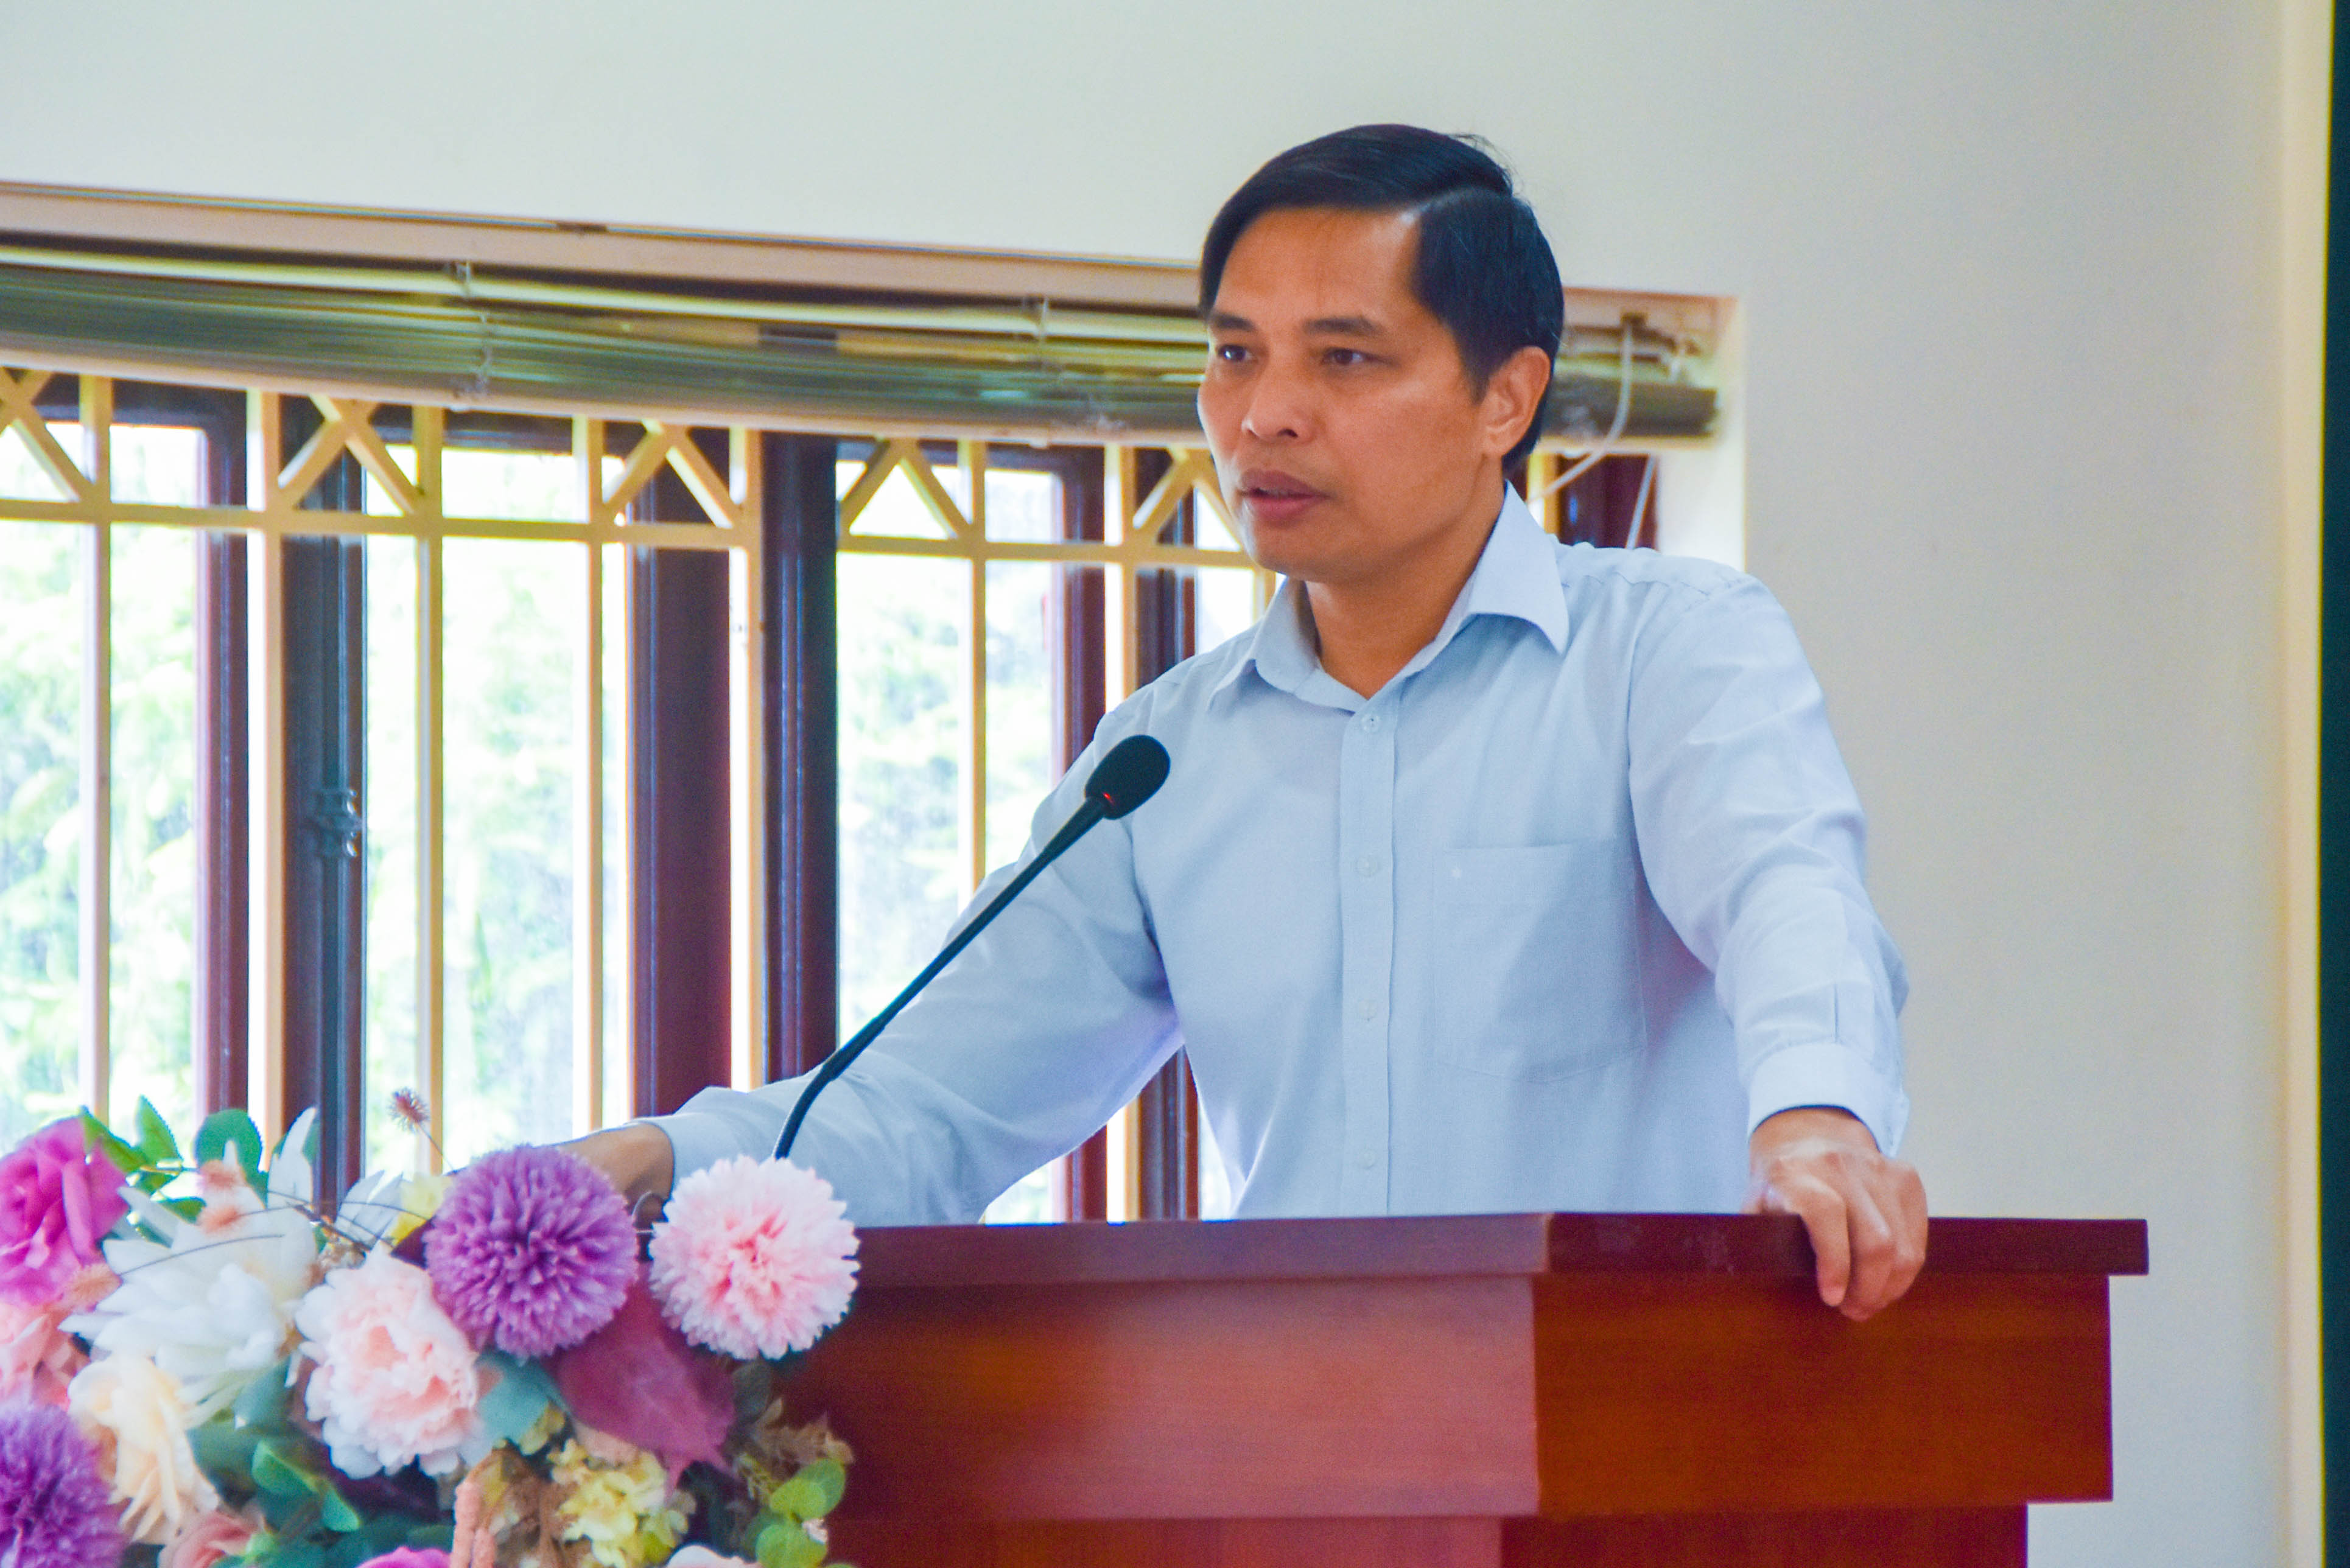 Đồng chí Vũ Văn Diện, Bí thư Thành ủy Hạ Long, phát biểu tại buổi khai mạc lớp bồi dưỡng.